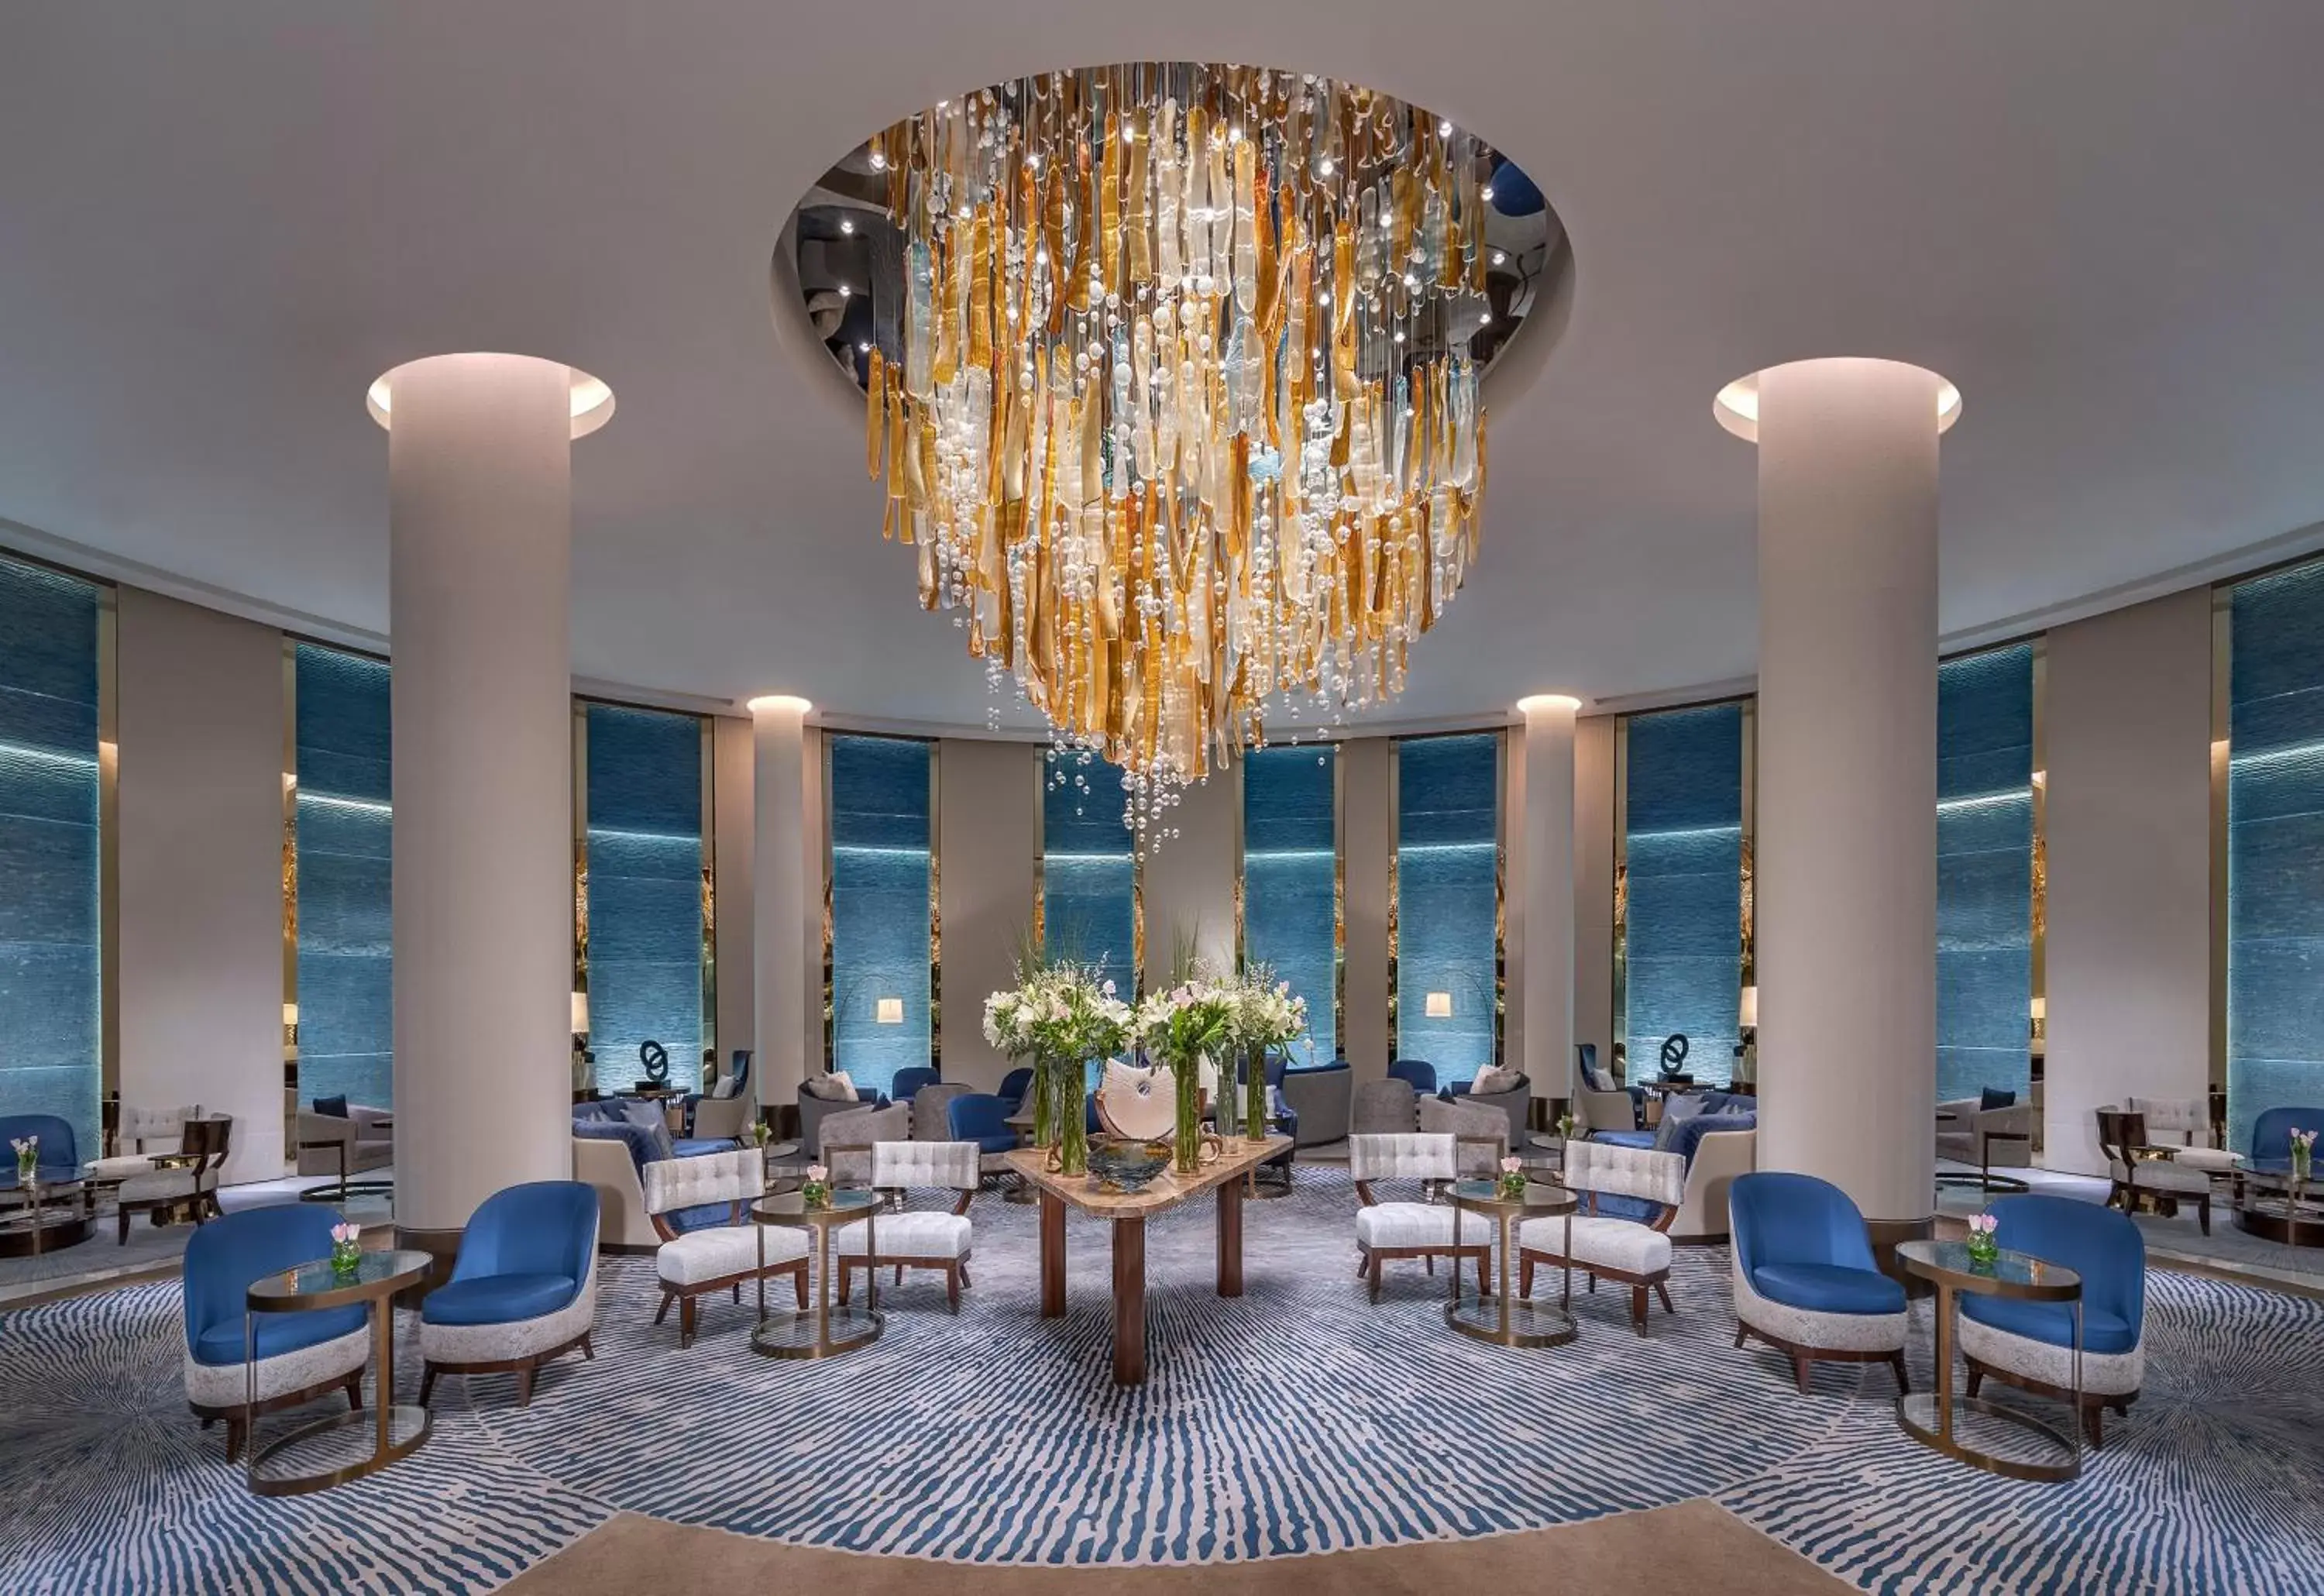 Lobby or reception in Al Faisaliah Hotel, Riyadh